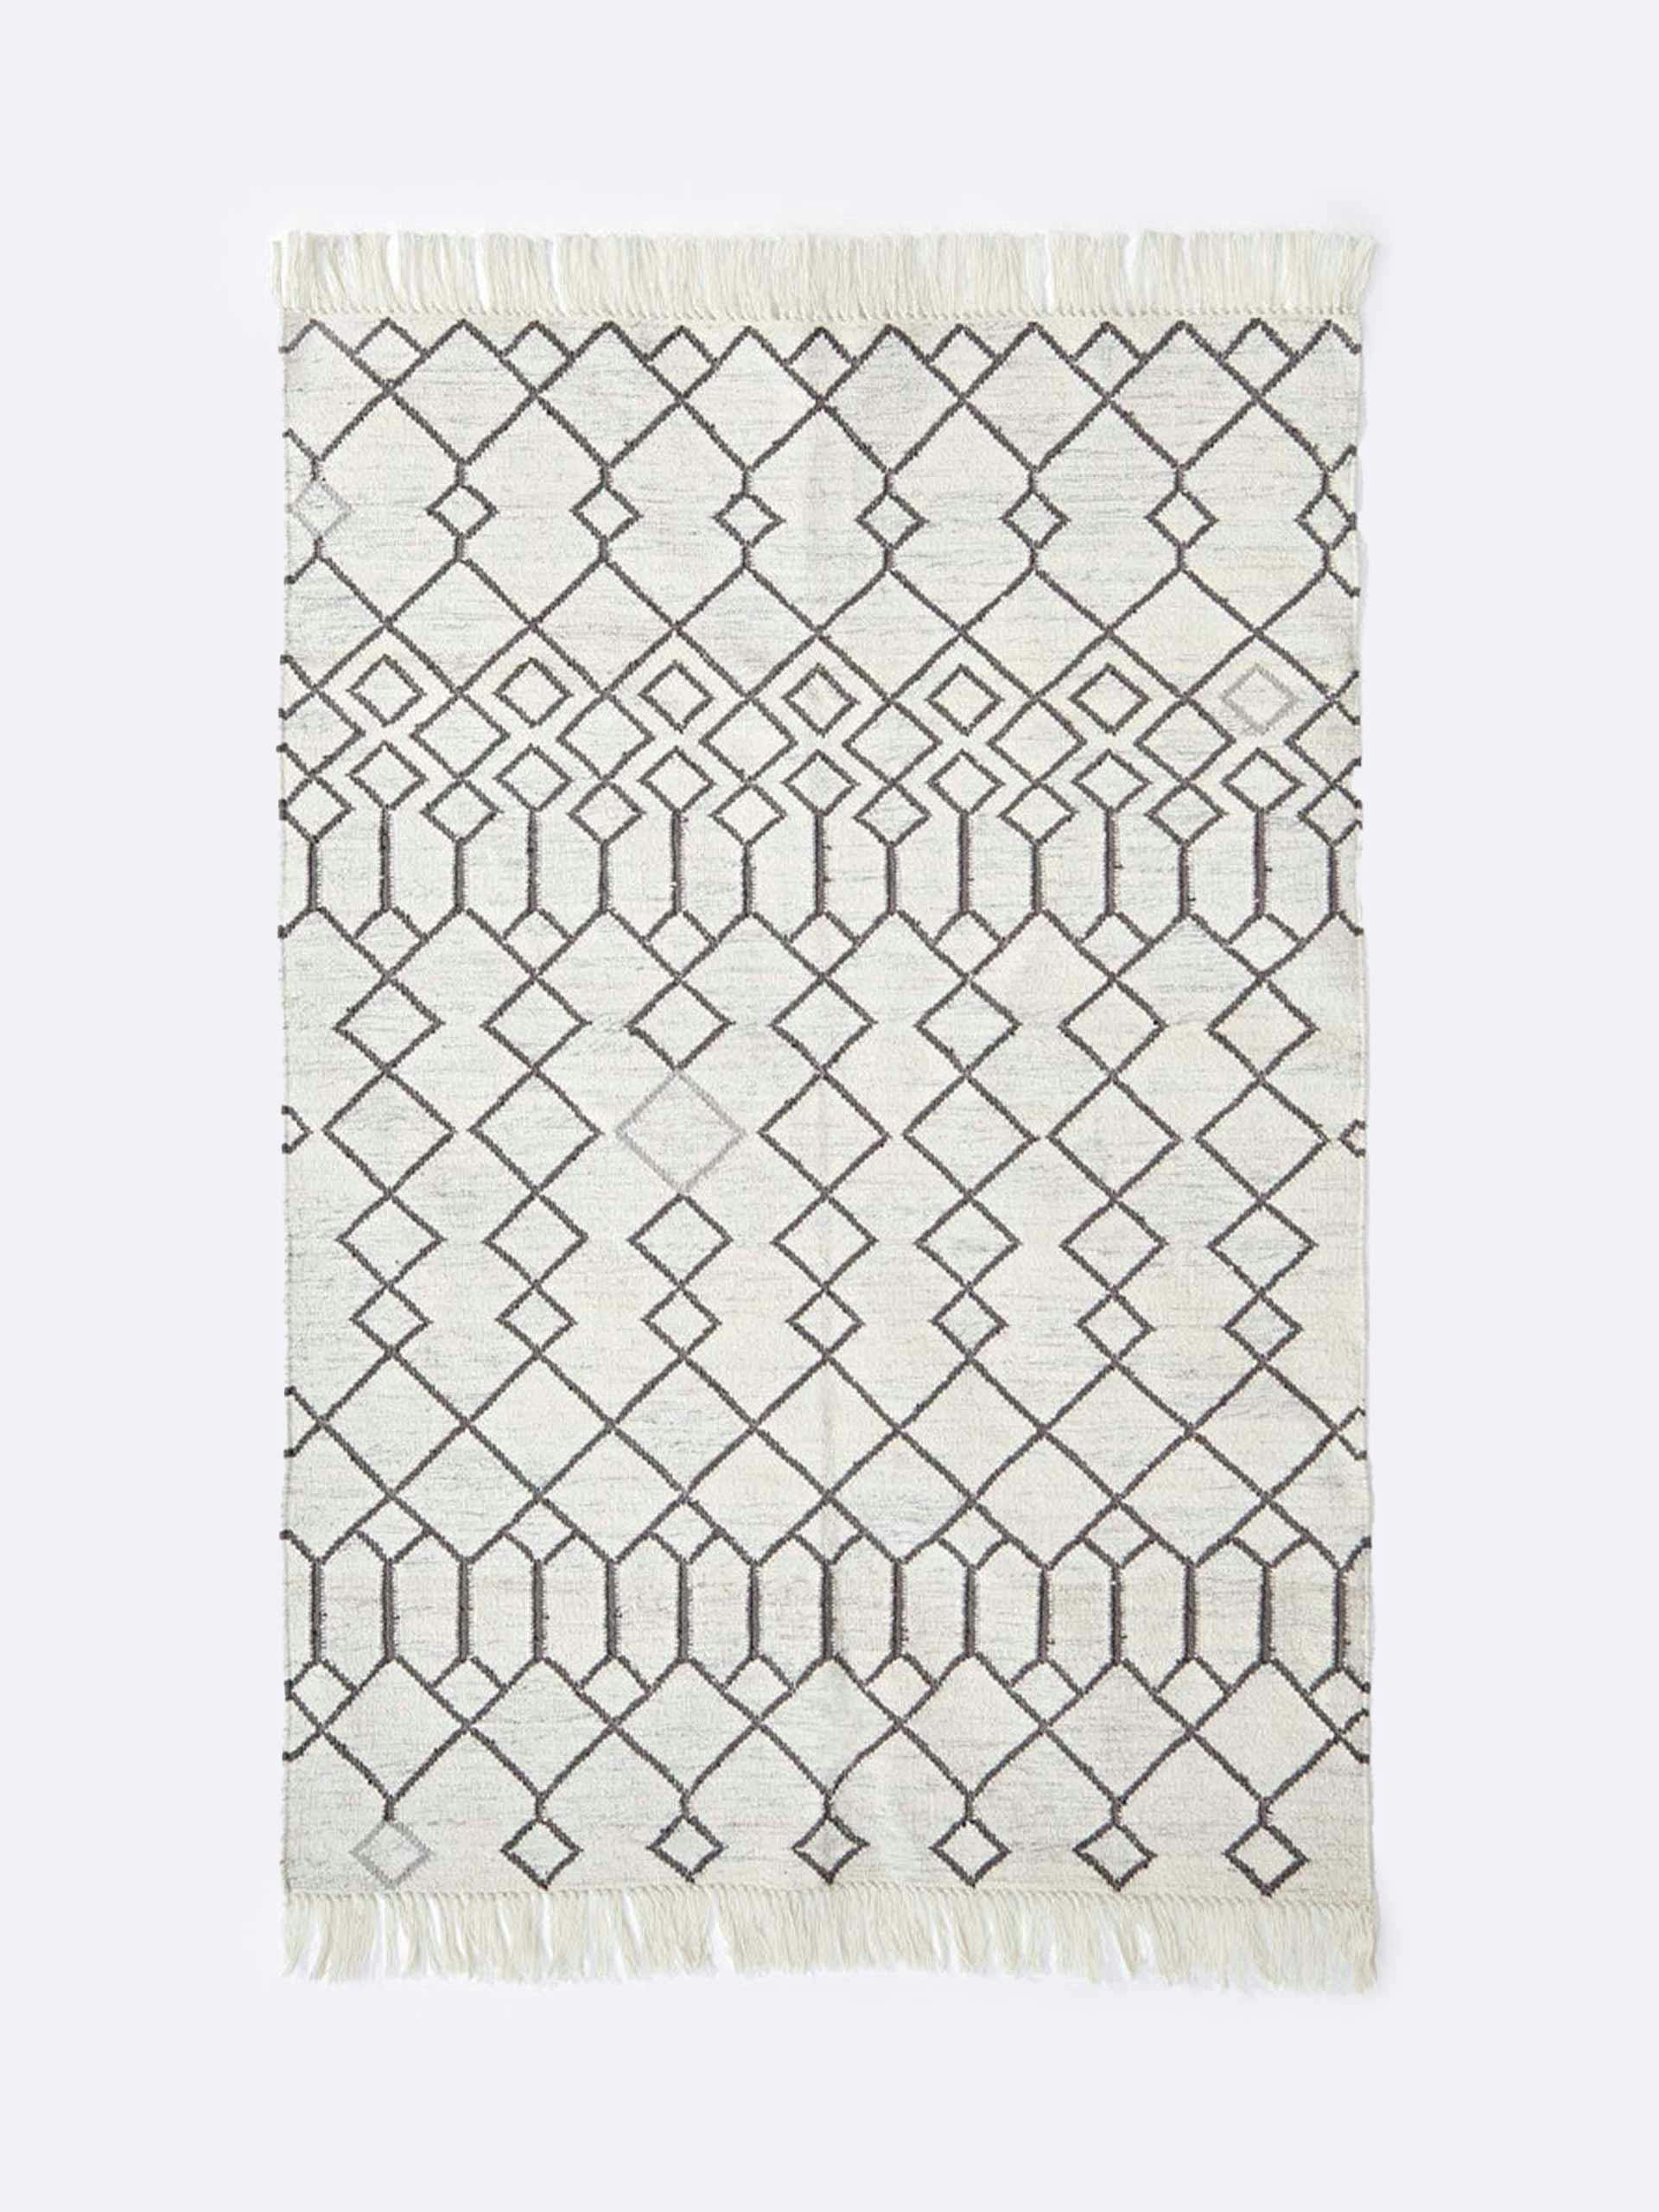 Moorish inspired runner rug